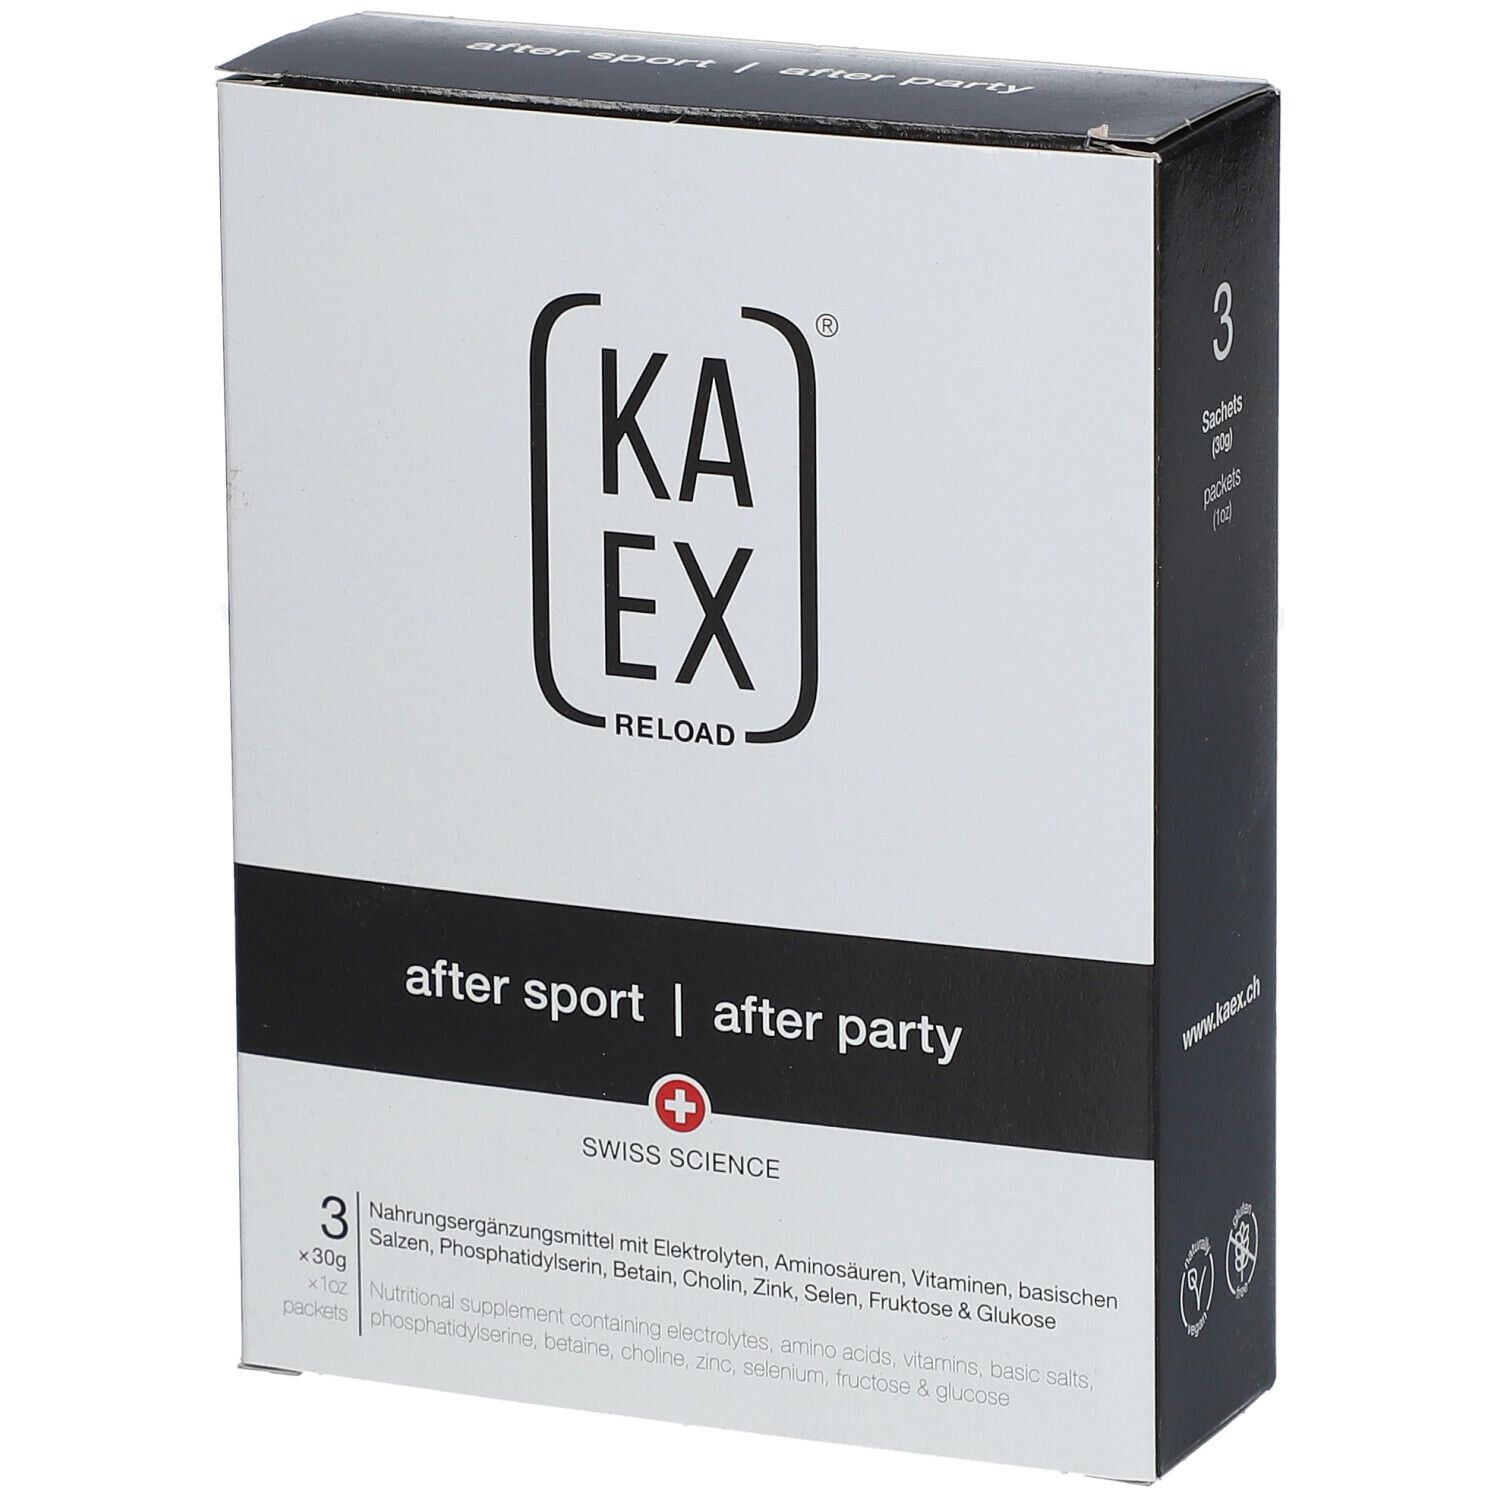 Kaex® Reload after sport